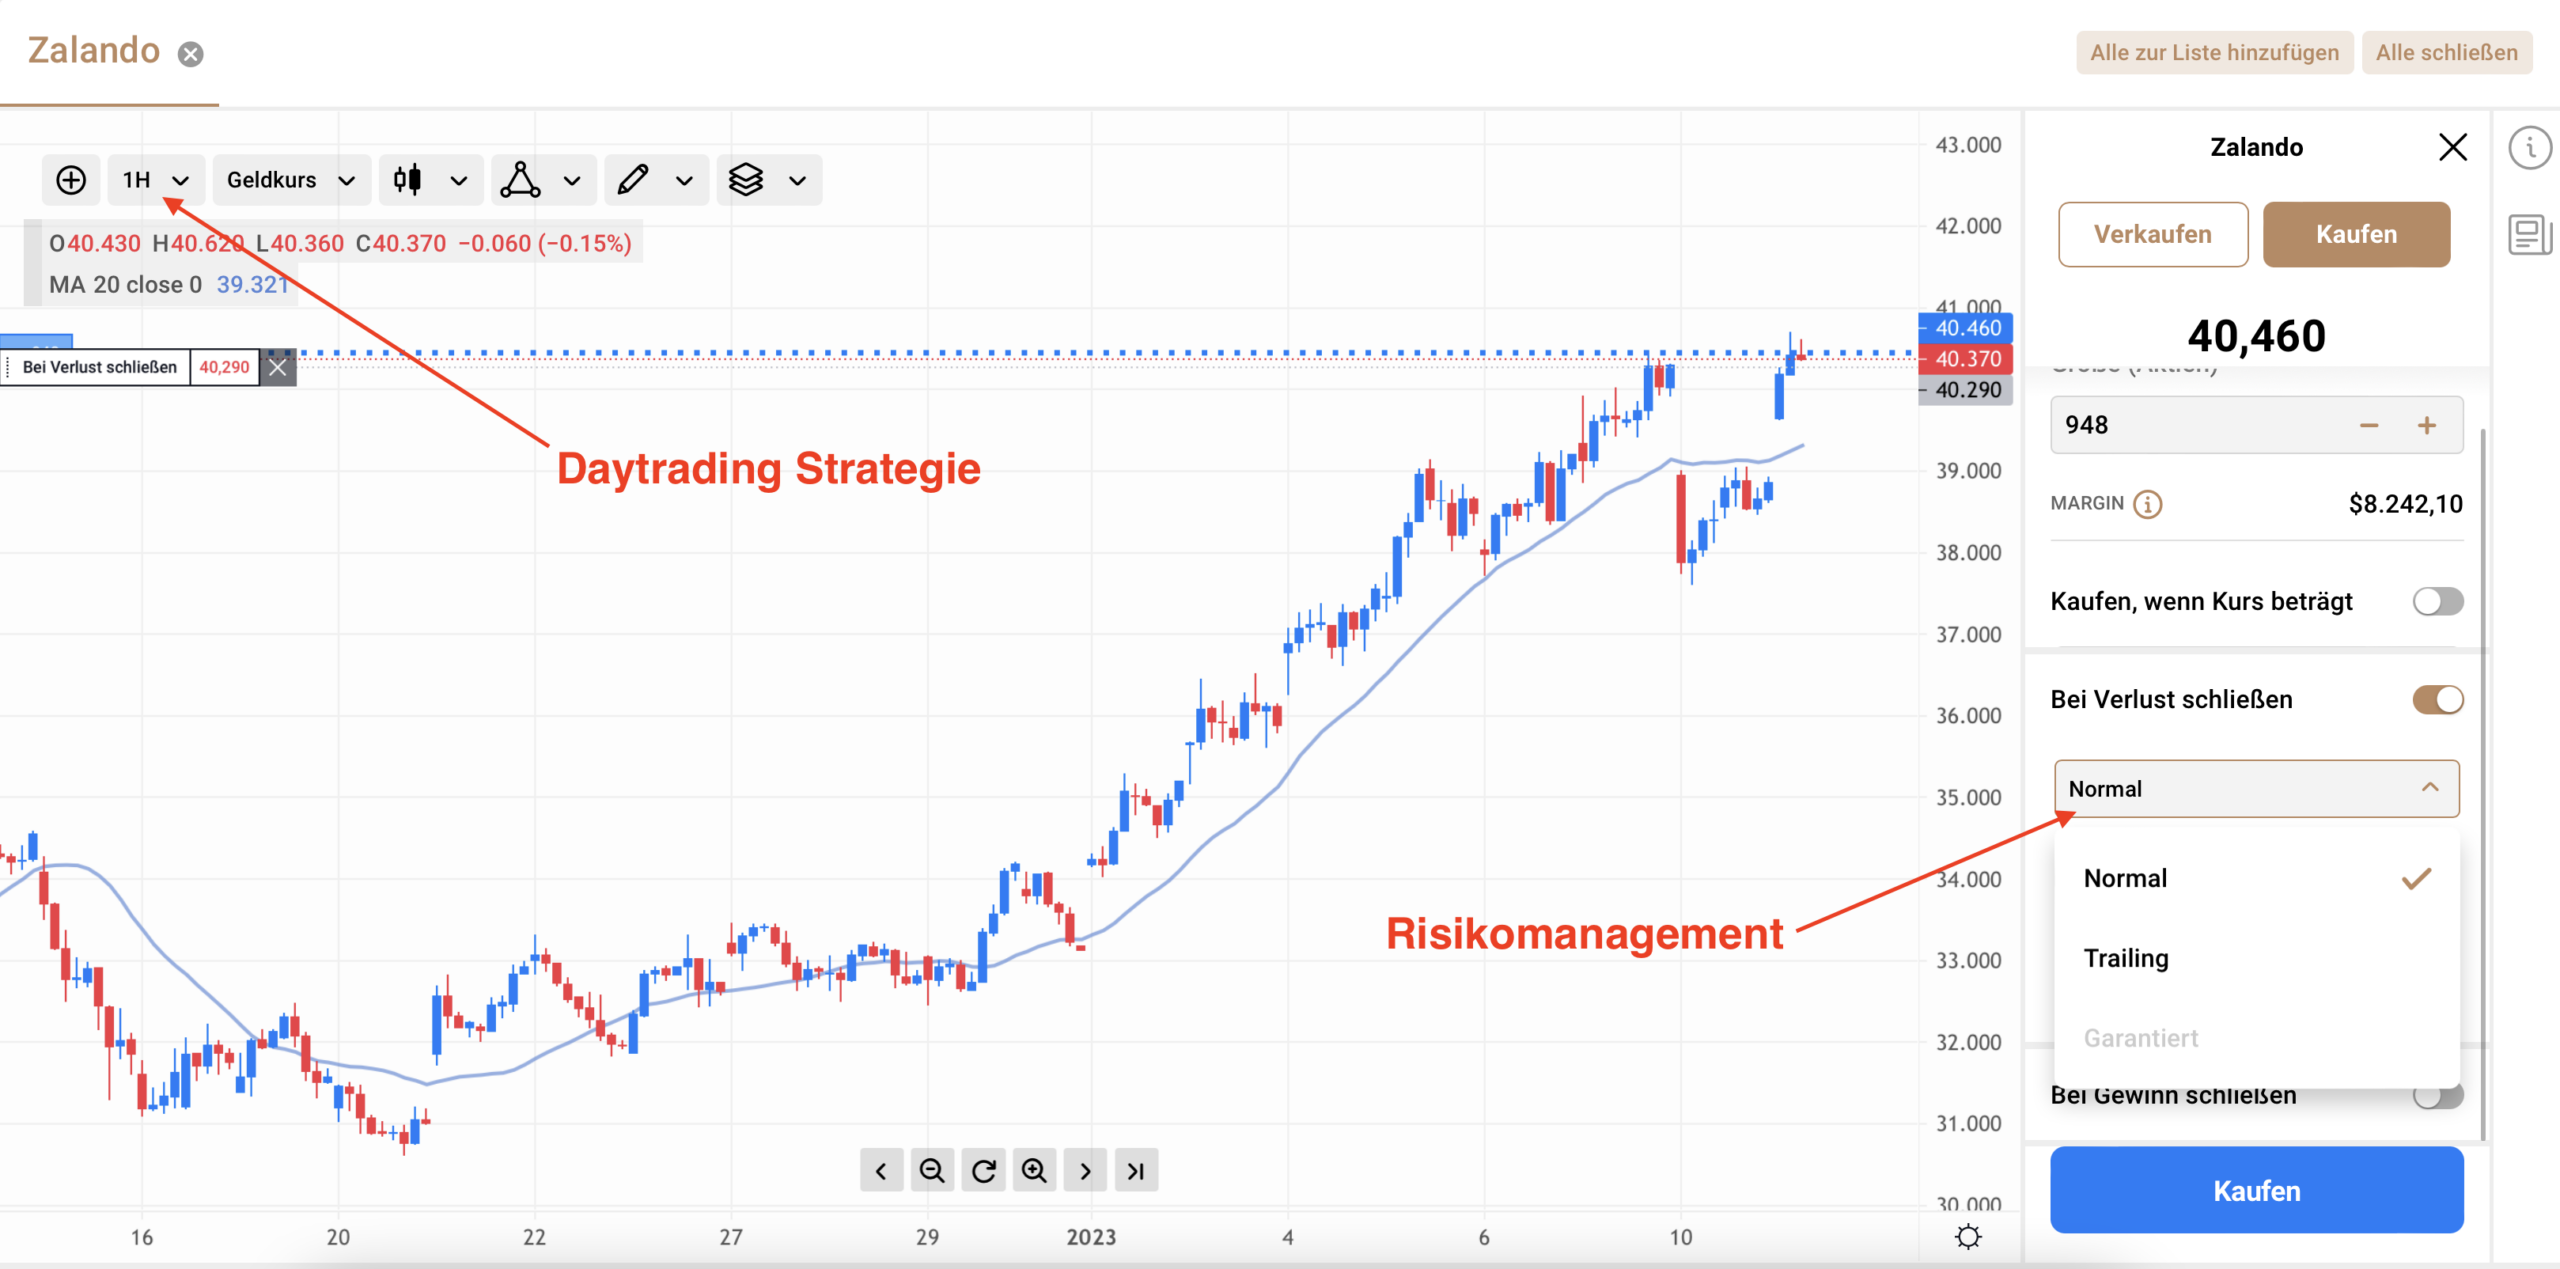 Zalando Trading Chart